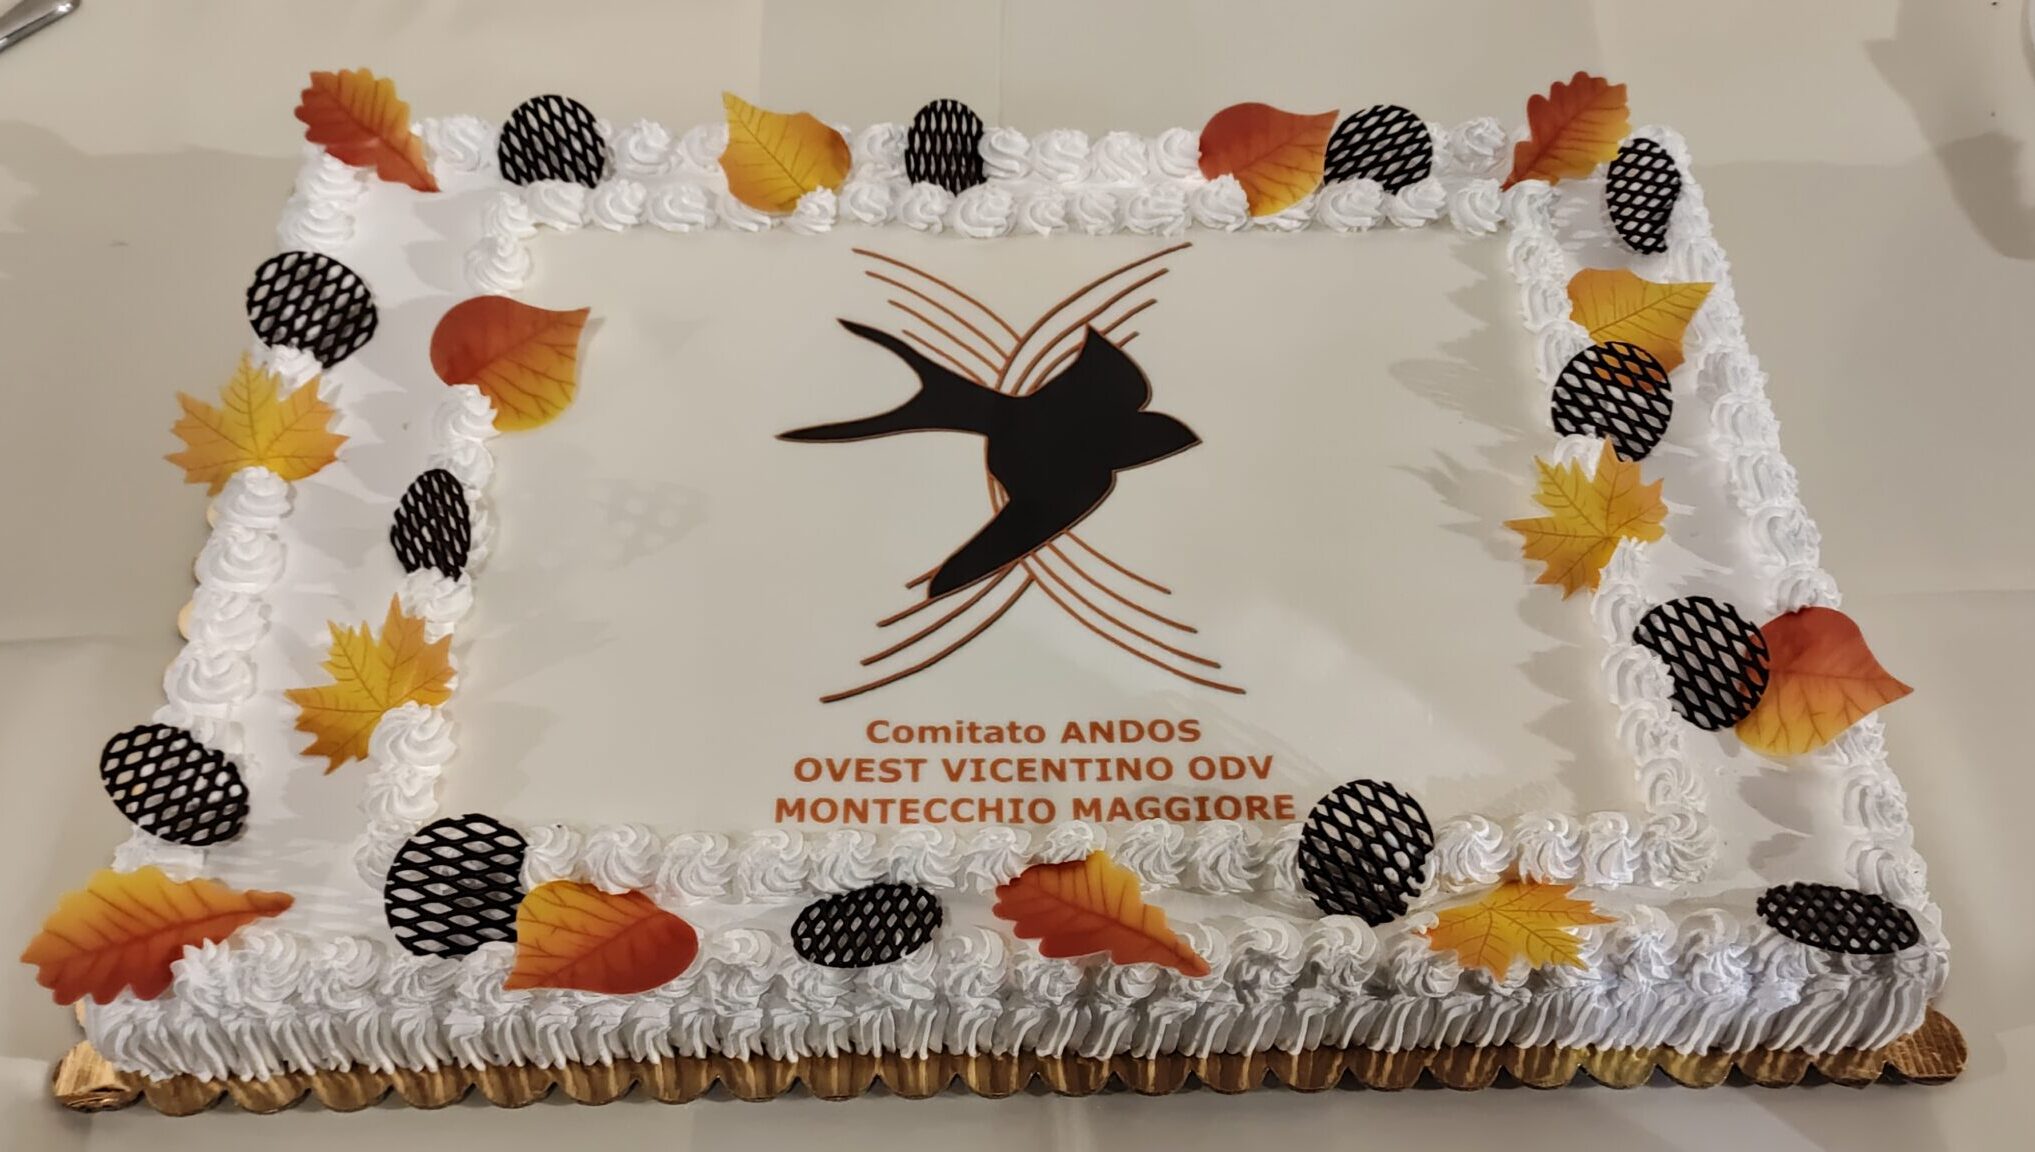 In 240 per festeggiare i 25 anni dell’Andos Ovest Vicentino